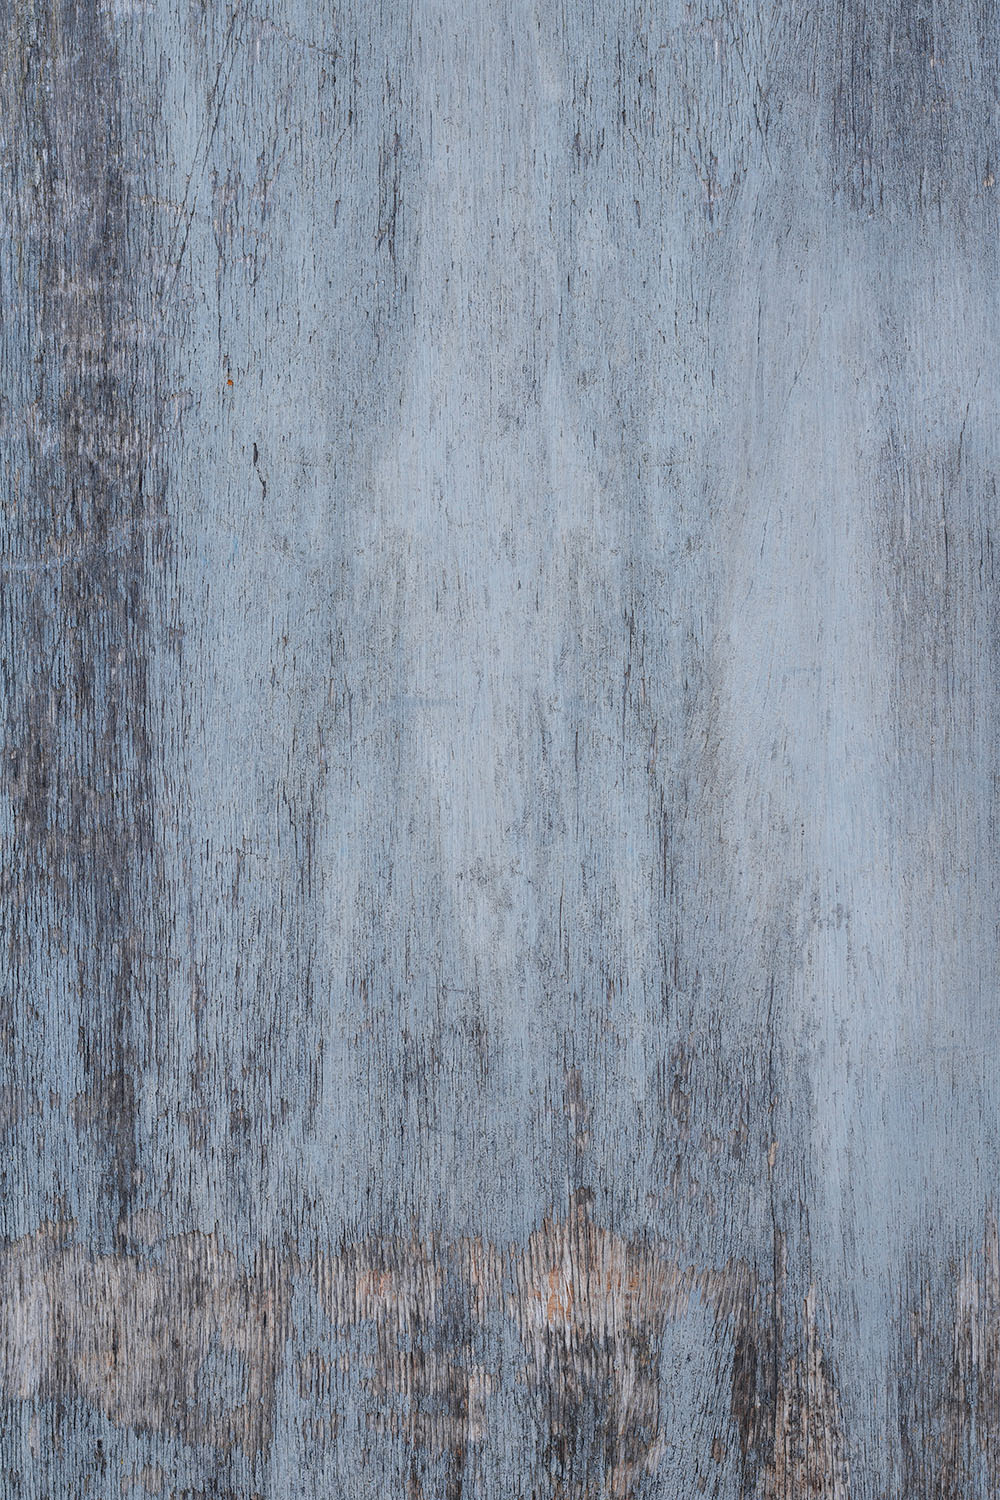 Verfijnd hout is een blauwe houten foodfotografie achtergrond